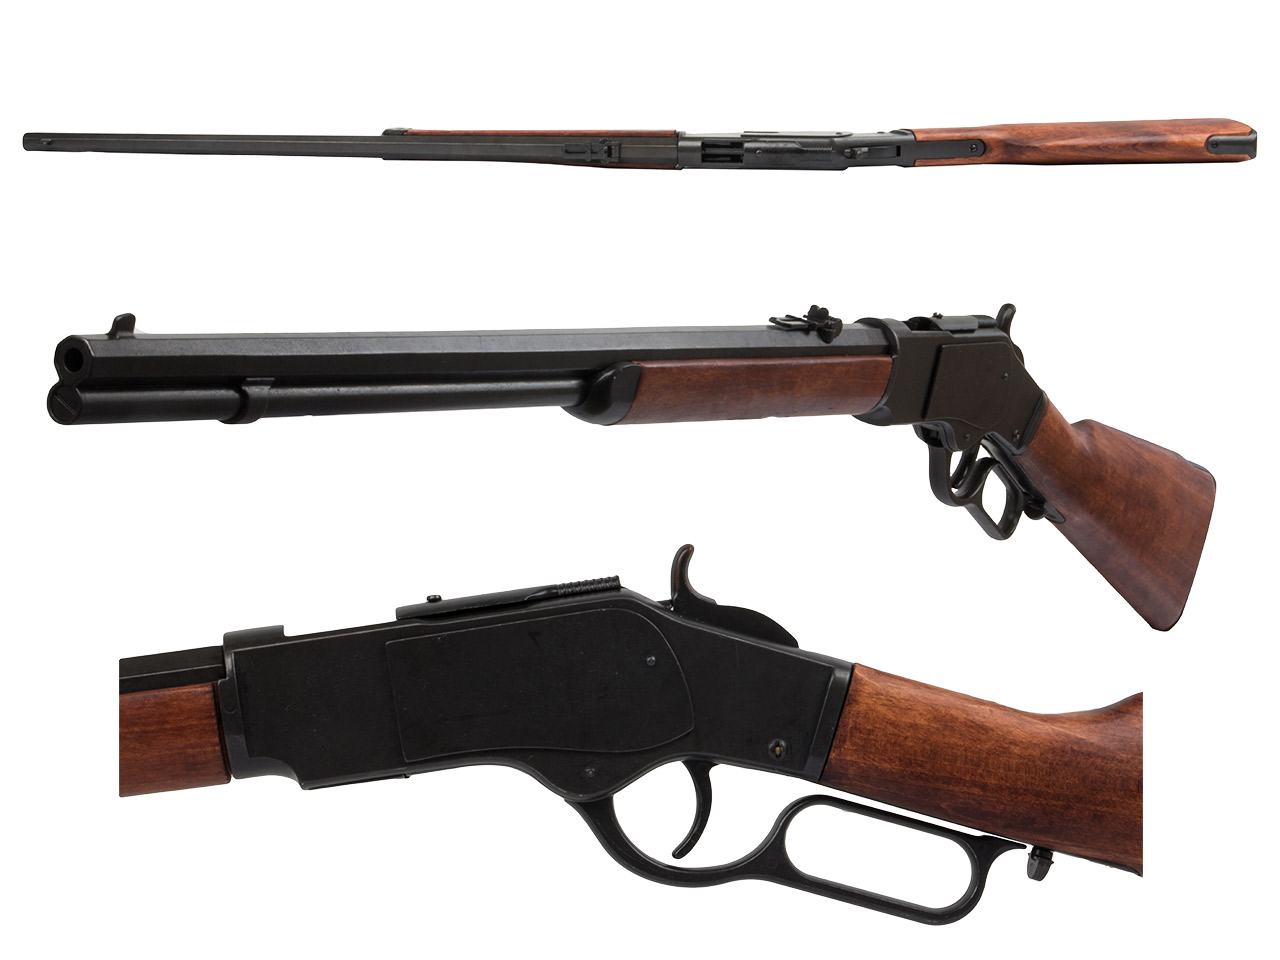 Deko Westerngewehr Denix Winchester Mod. 73 USA 1873 schwarz realistisches Repetieren mit Hülsenauswurf Gesamtlänge 110 cm